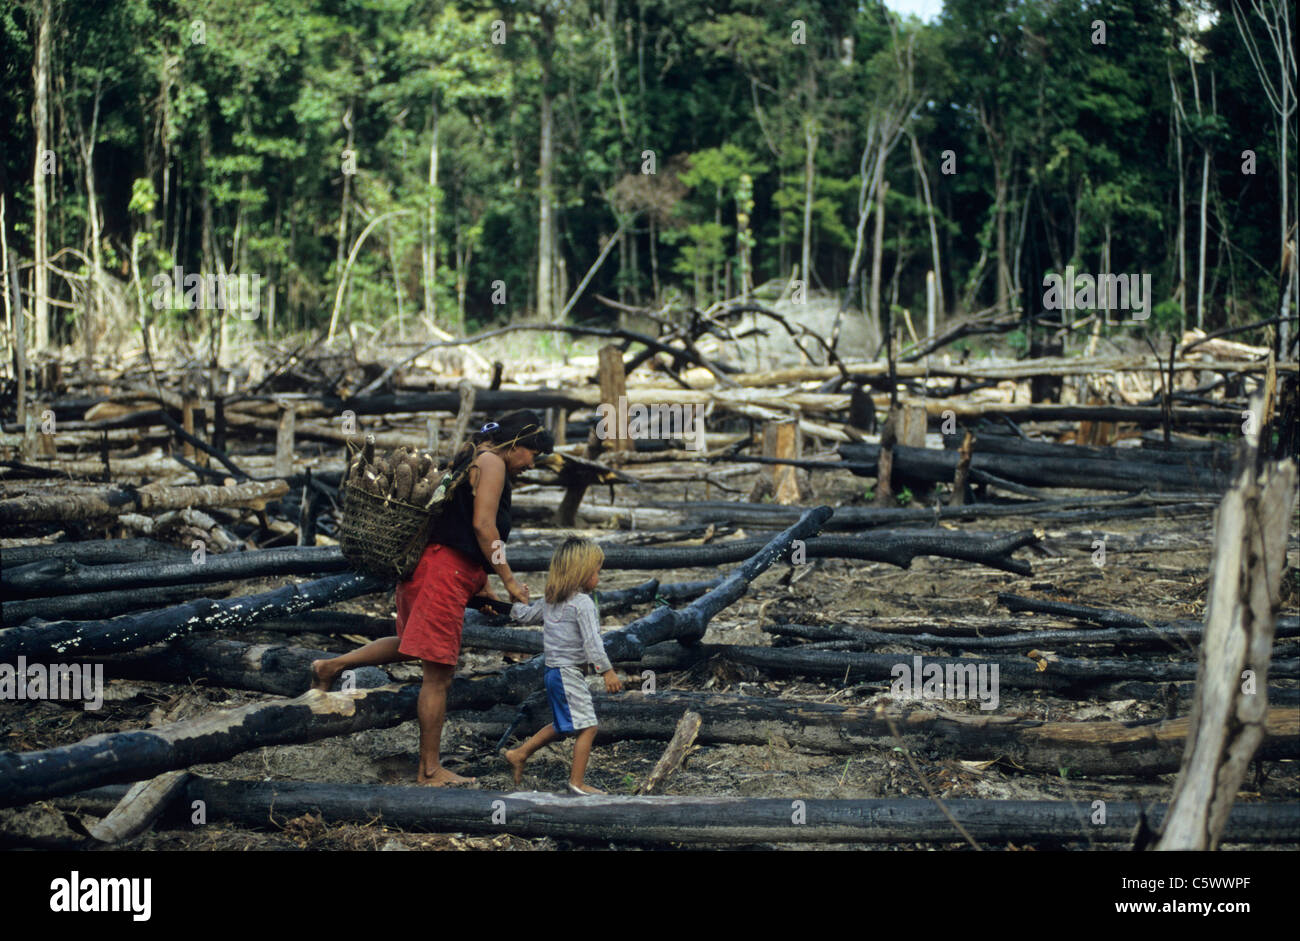 Brésil Amazon, Amazonas, brûlé et déboisées près de rainforest Jurua river, Indio Kulina femme avec enfant le manioc dans leur village Banque D'Images